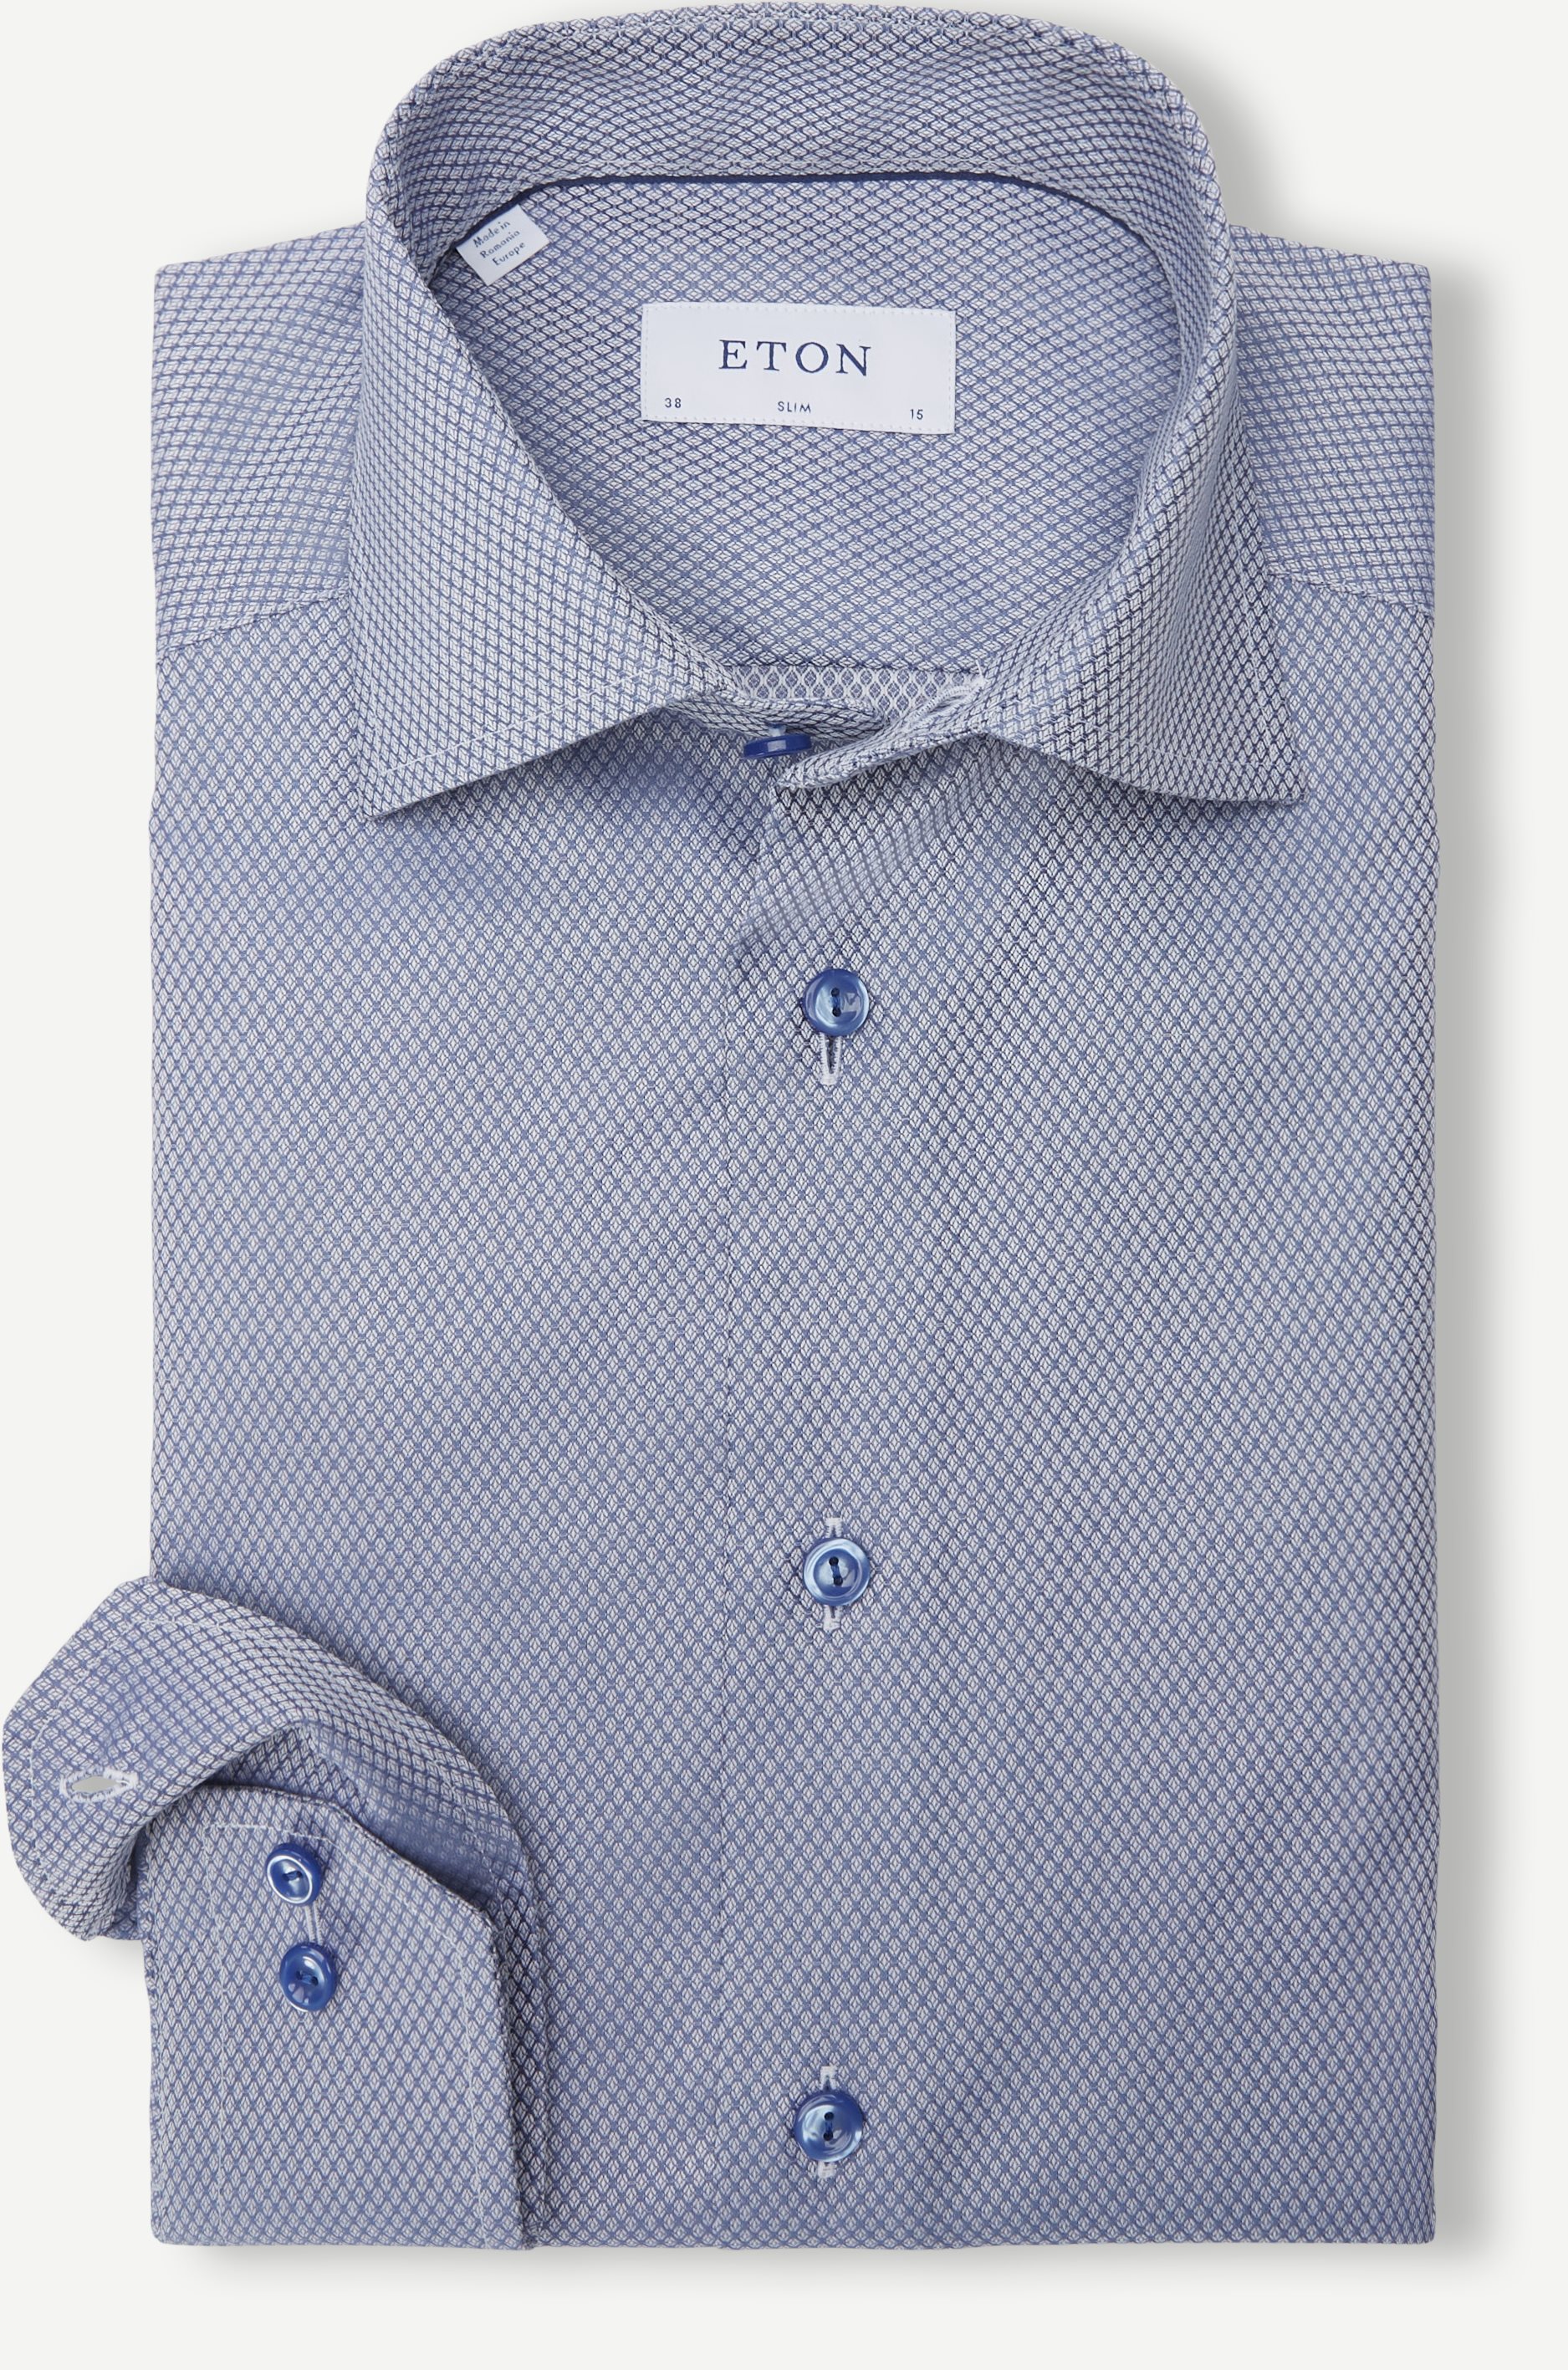 6020 79 Shirt - Skjorter - Slim fit - Blå